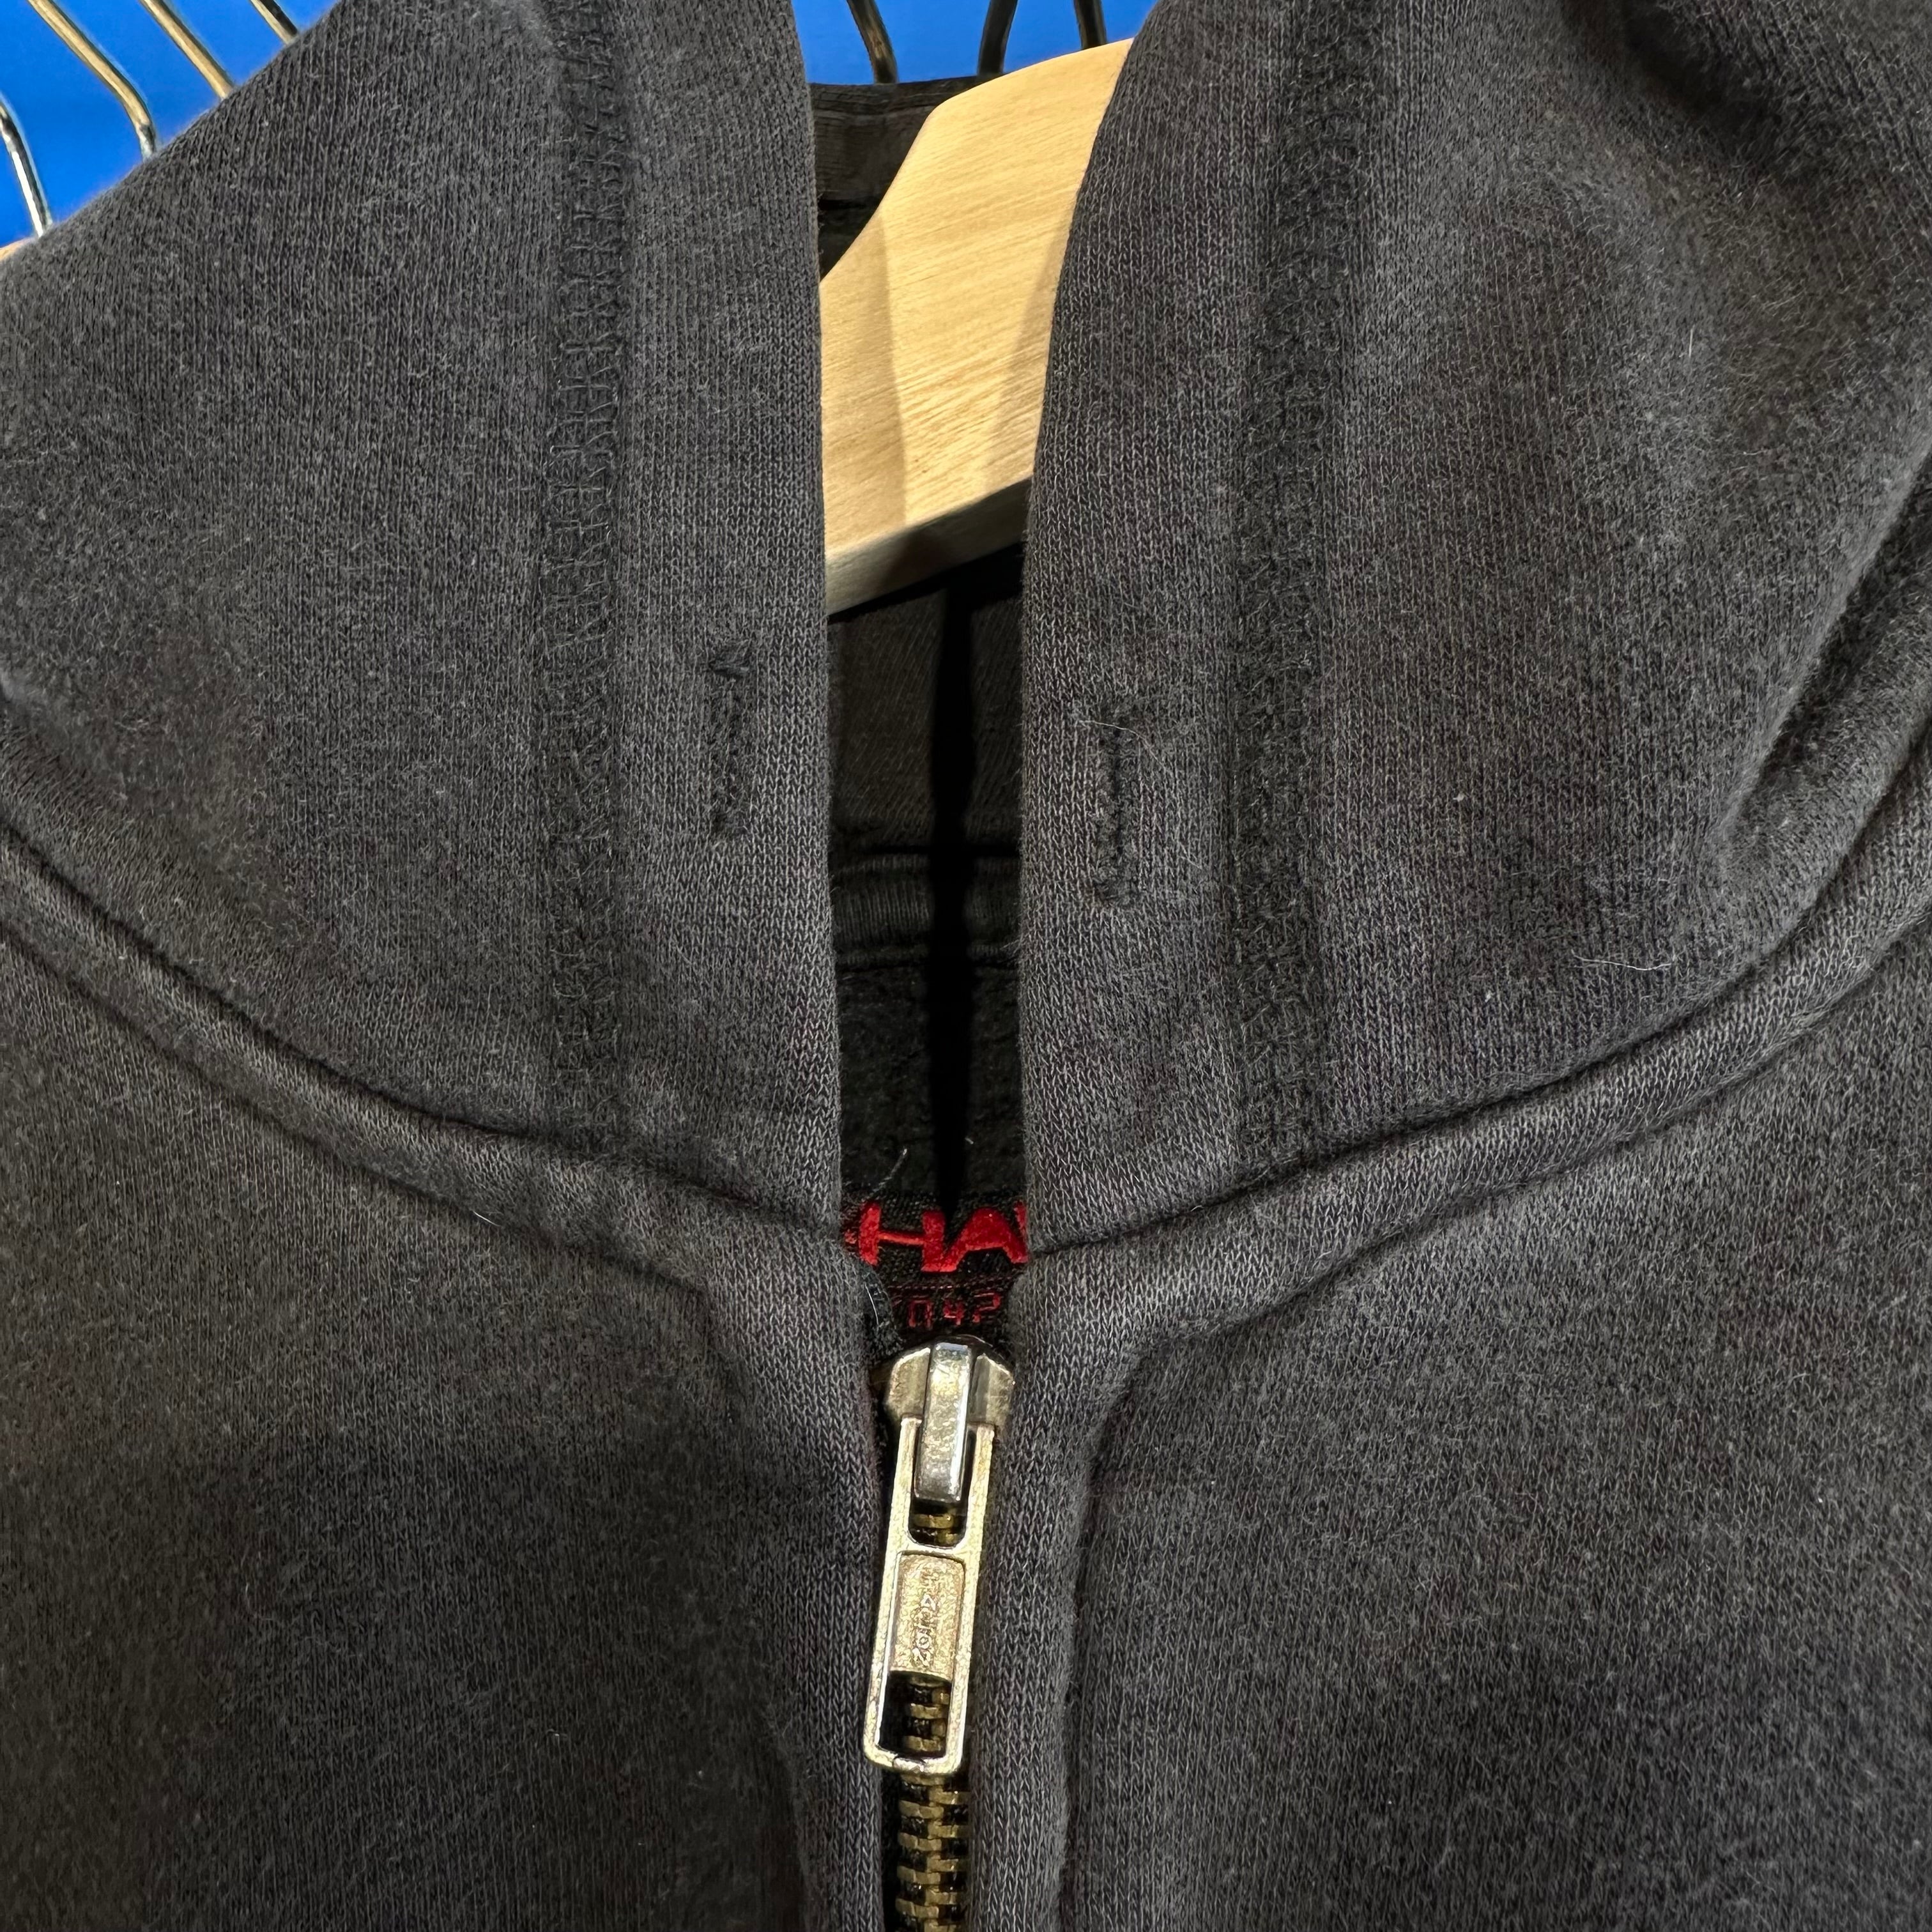 Tony Hawk Zip-Up Hooded Sweatshirt